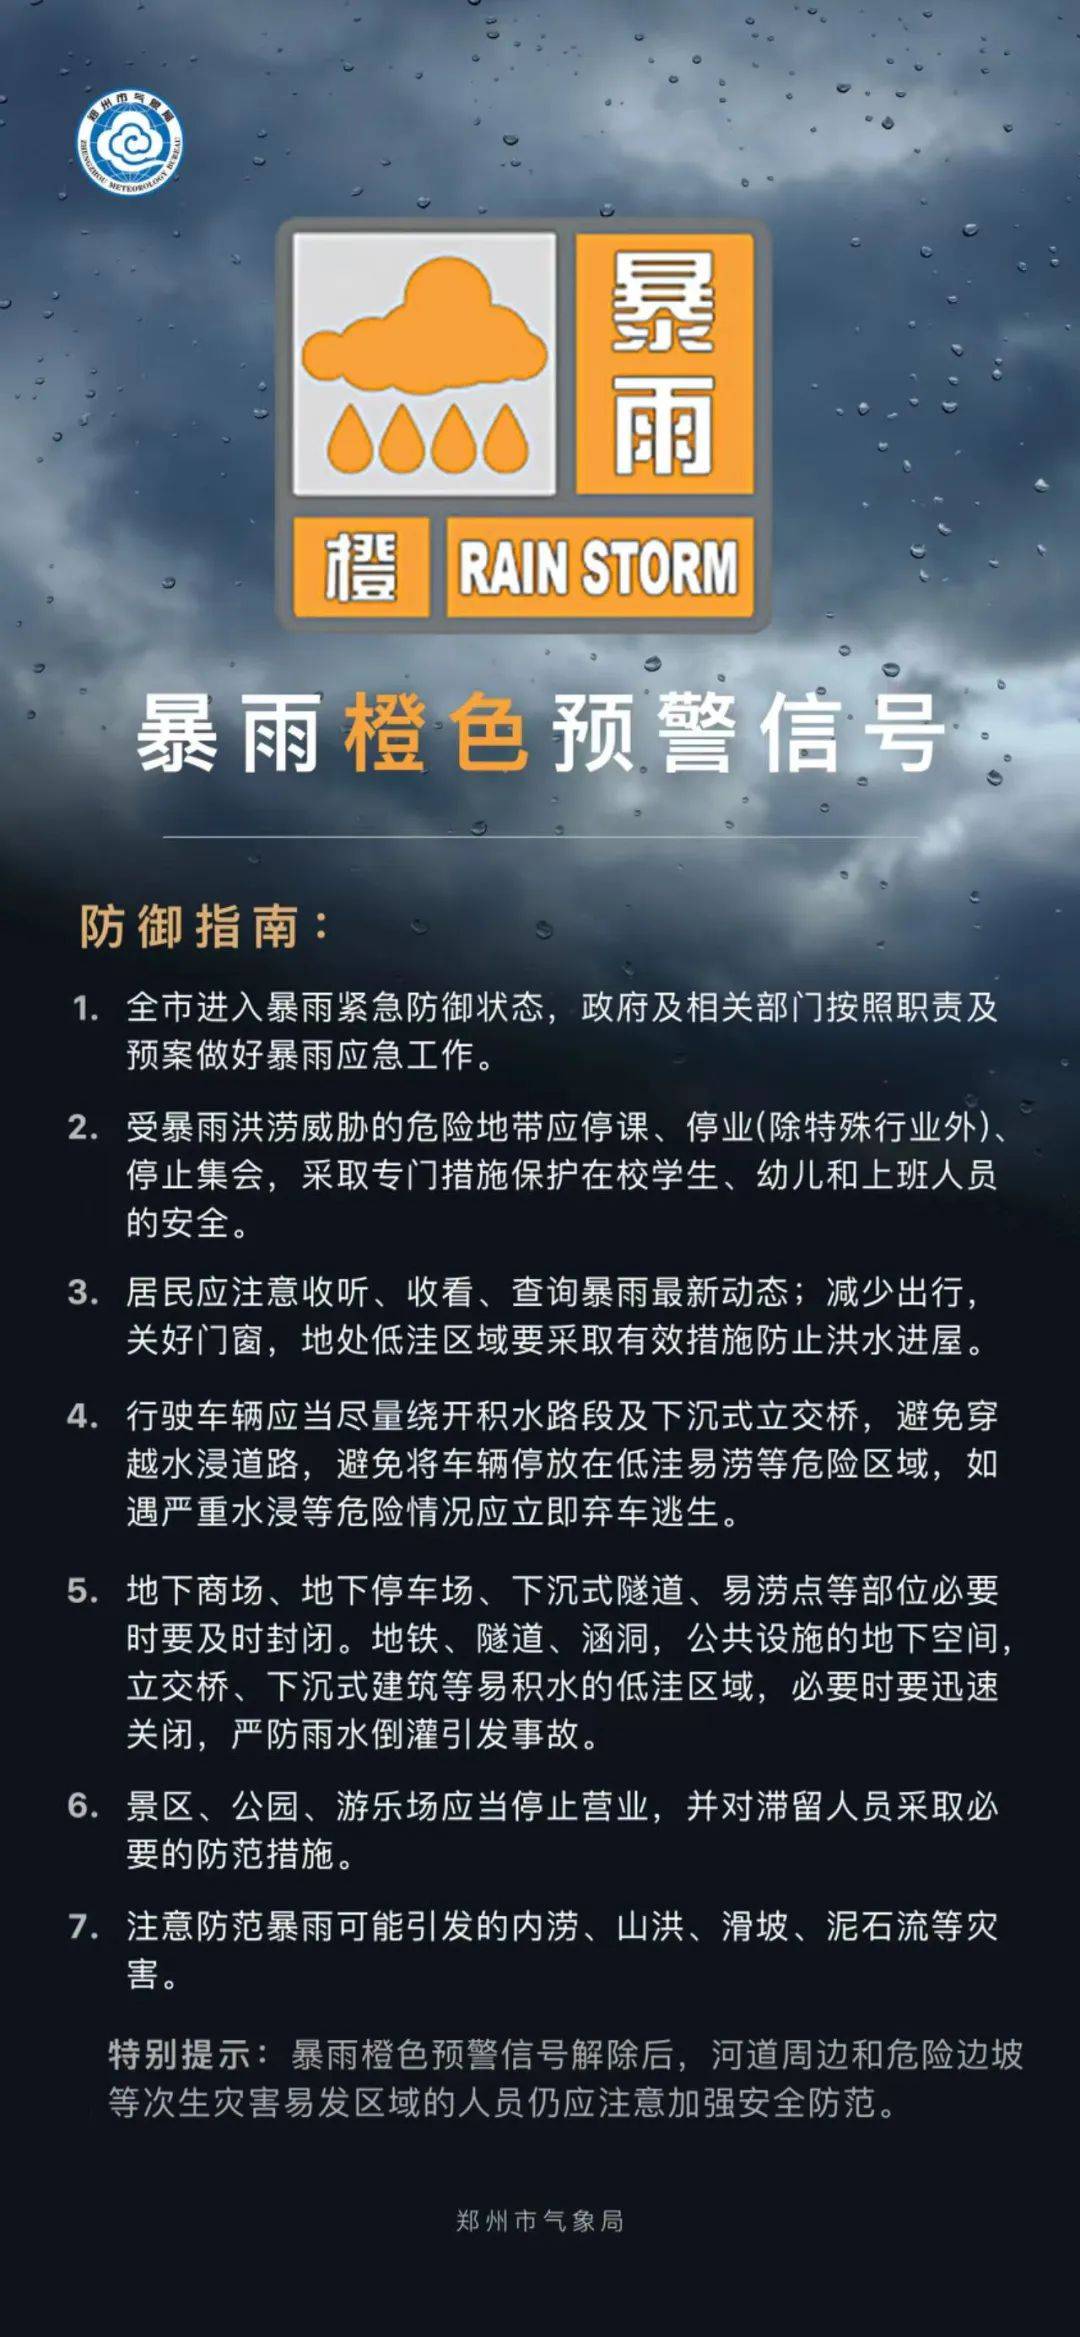 橙色预警:郑州进入暴雨紧急防御状态!